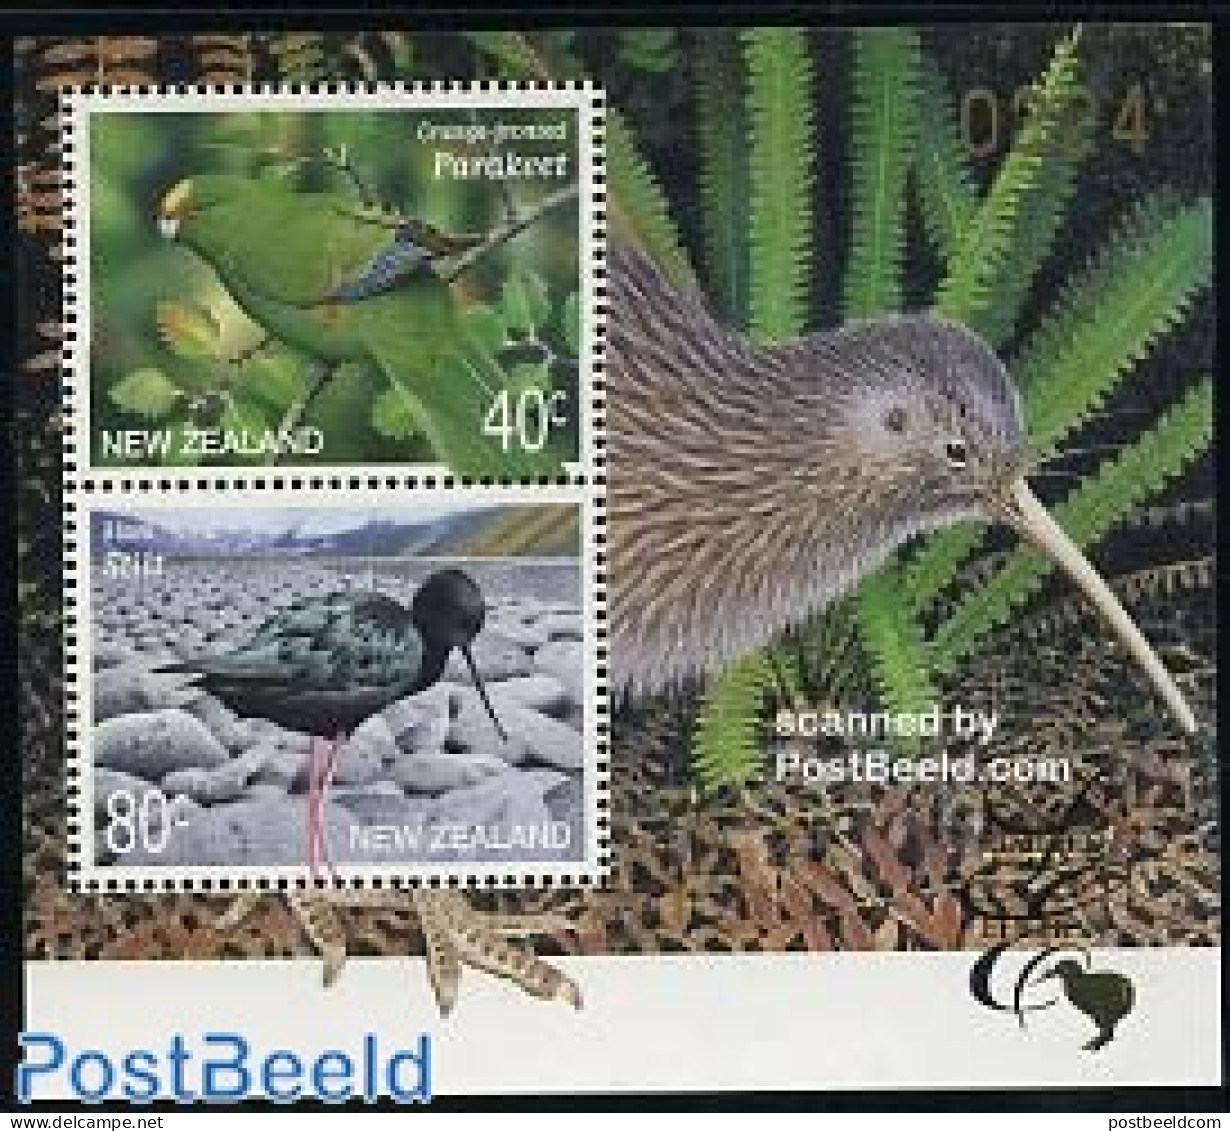 New Zealand 2000 Birds S/s, Limited Edition, Mint NH, Nature - Birds - Ongebruikt